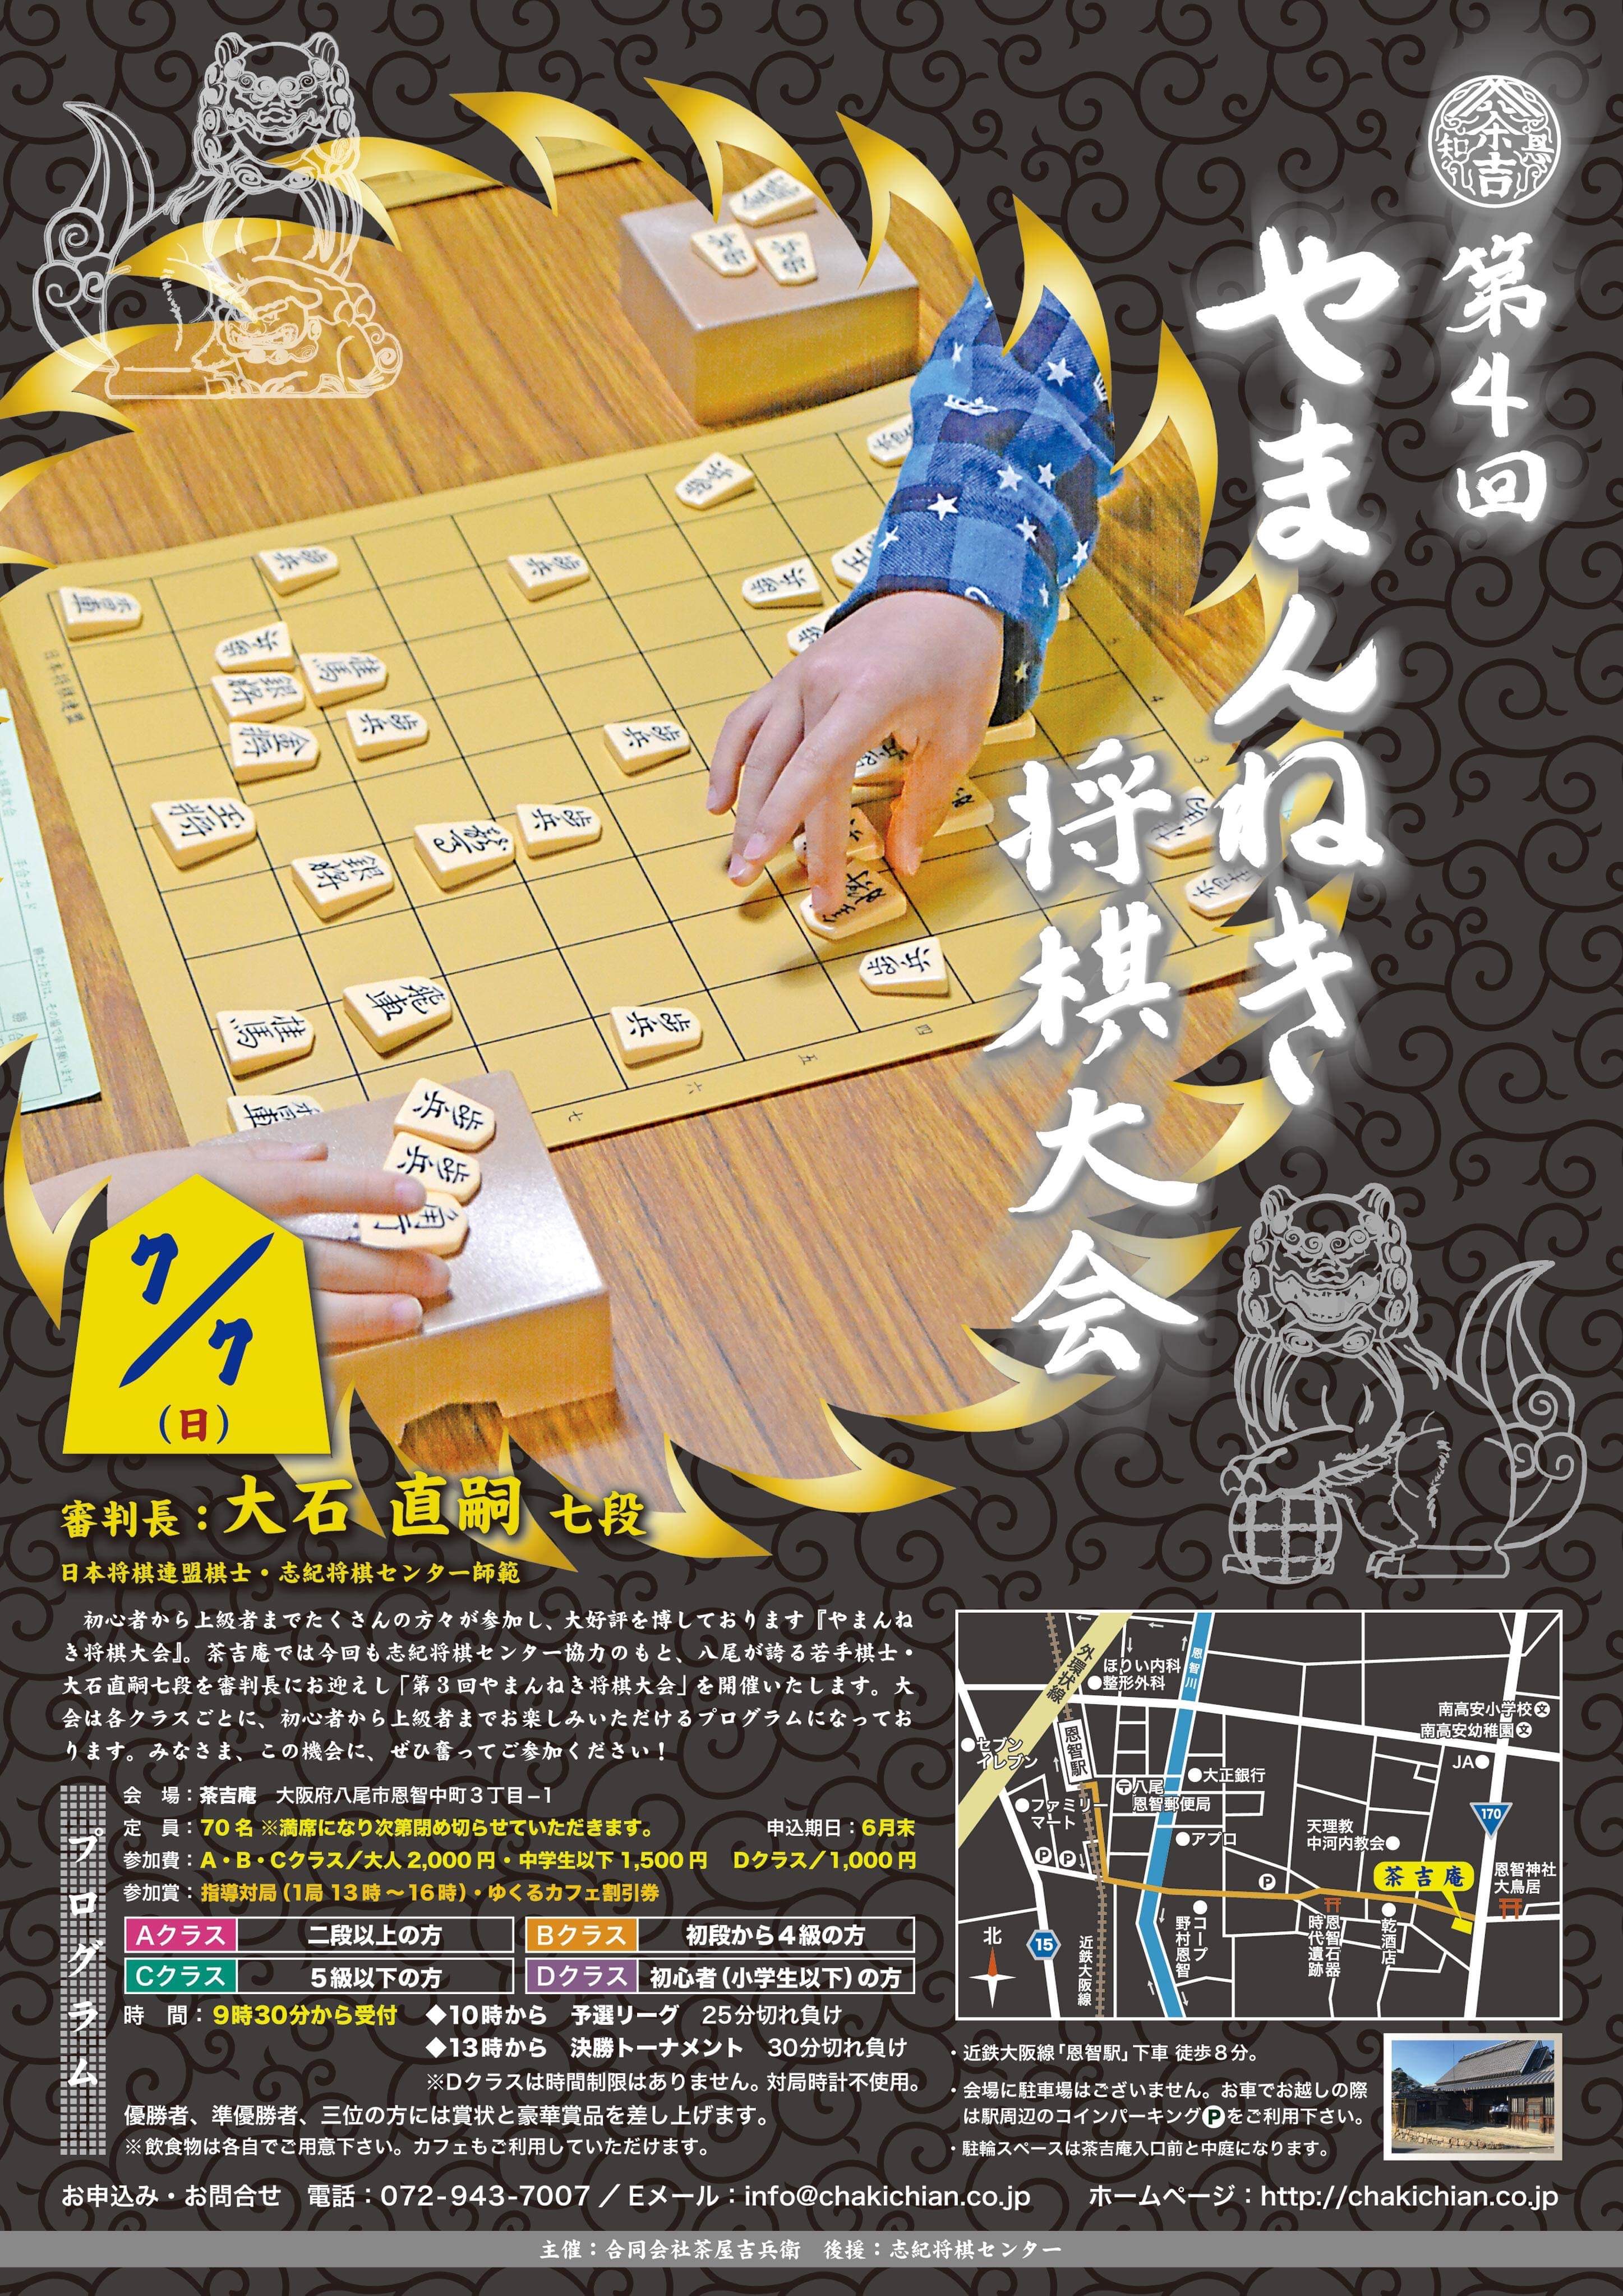 【2019.7.7】第4回 やまんねき将棋大会